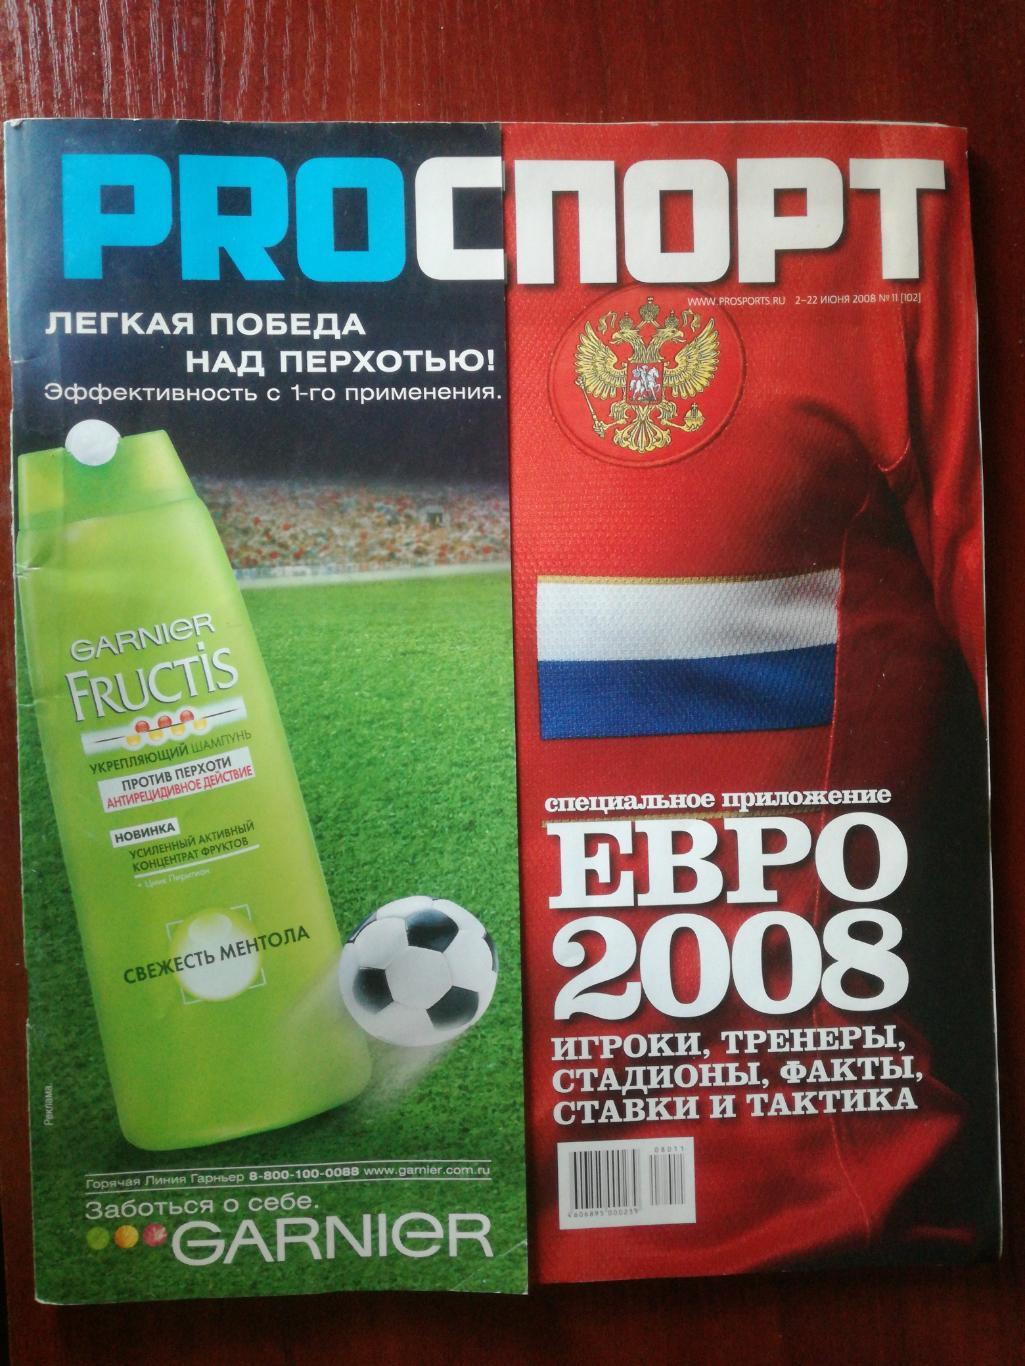 Журнал ProСпорт, 2008, №11